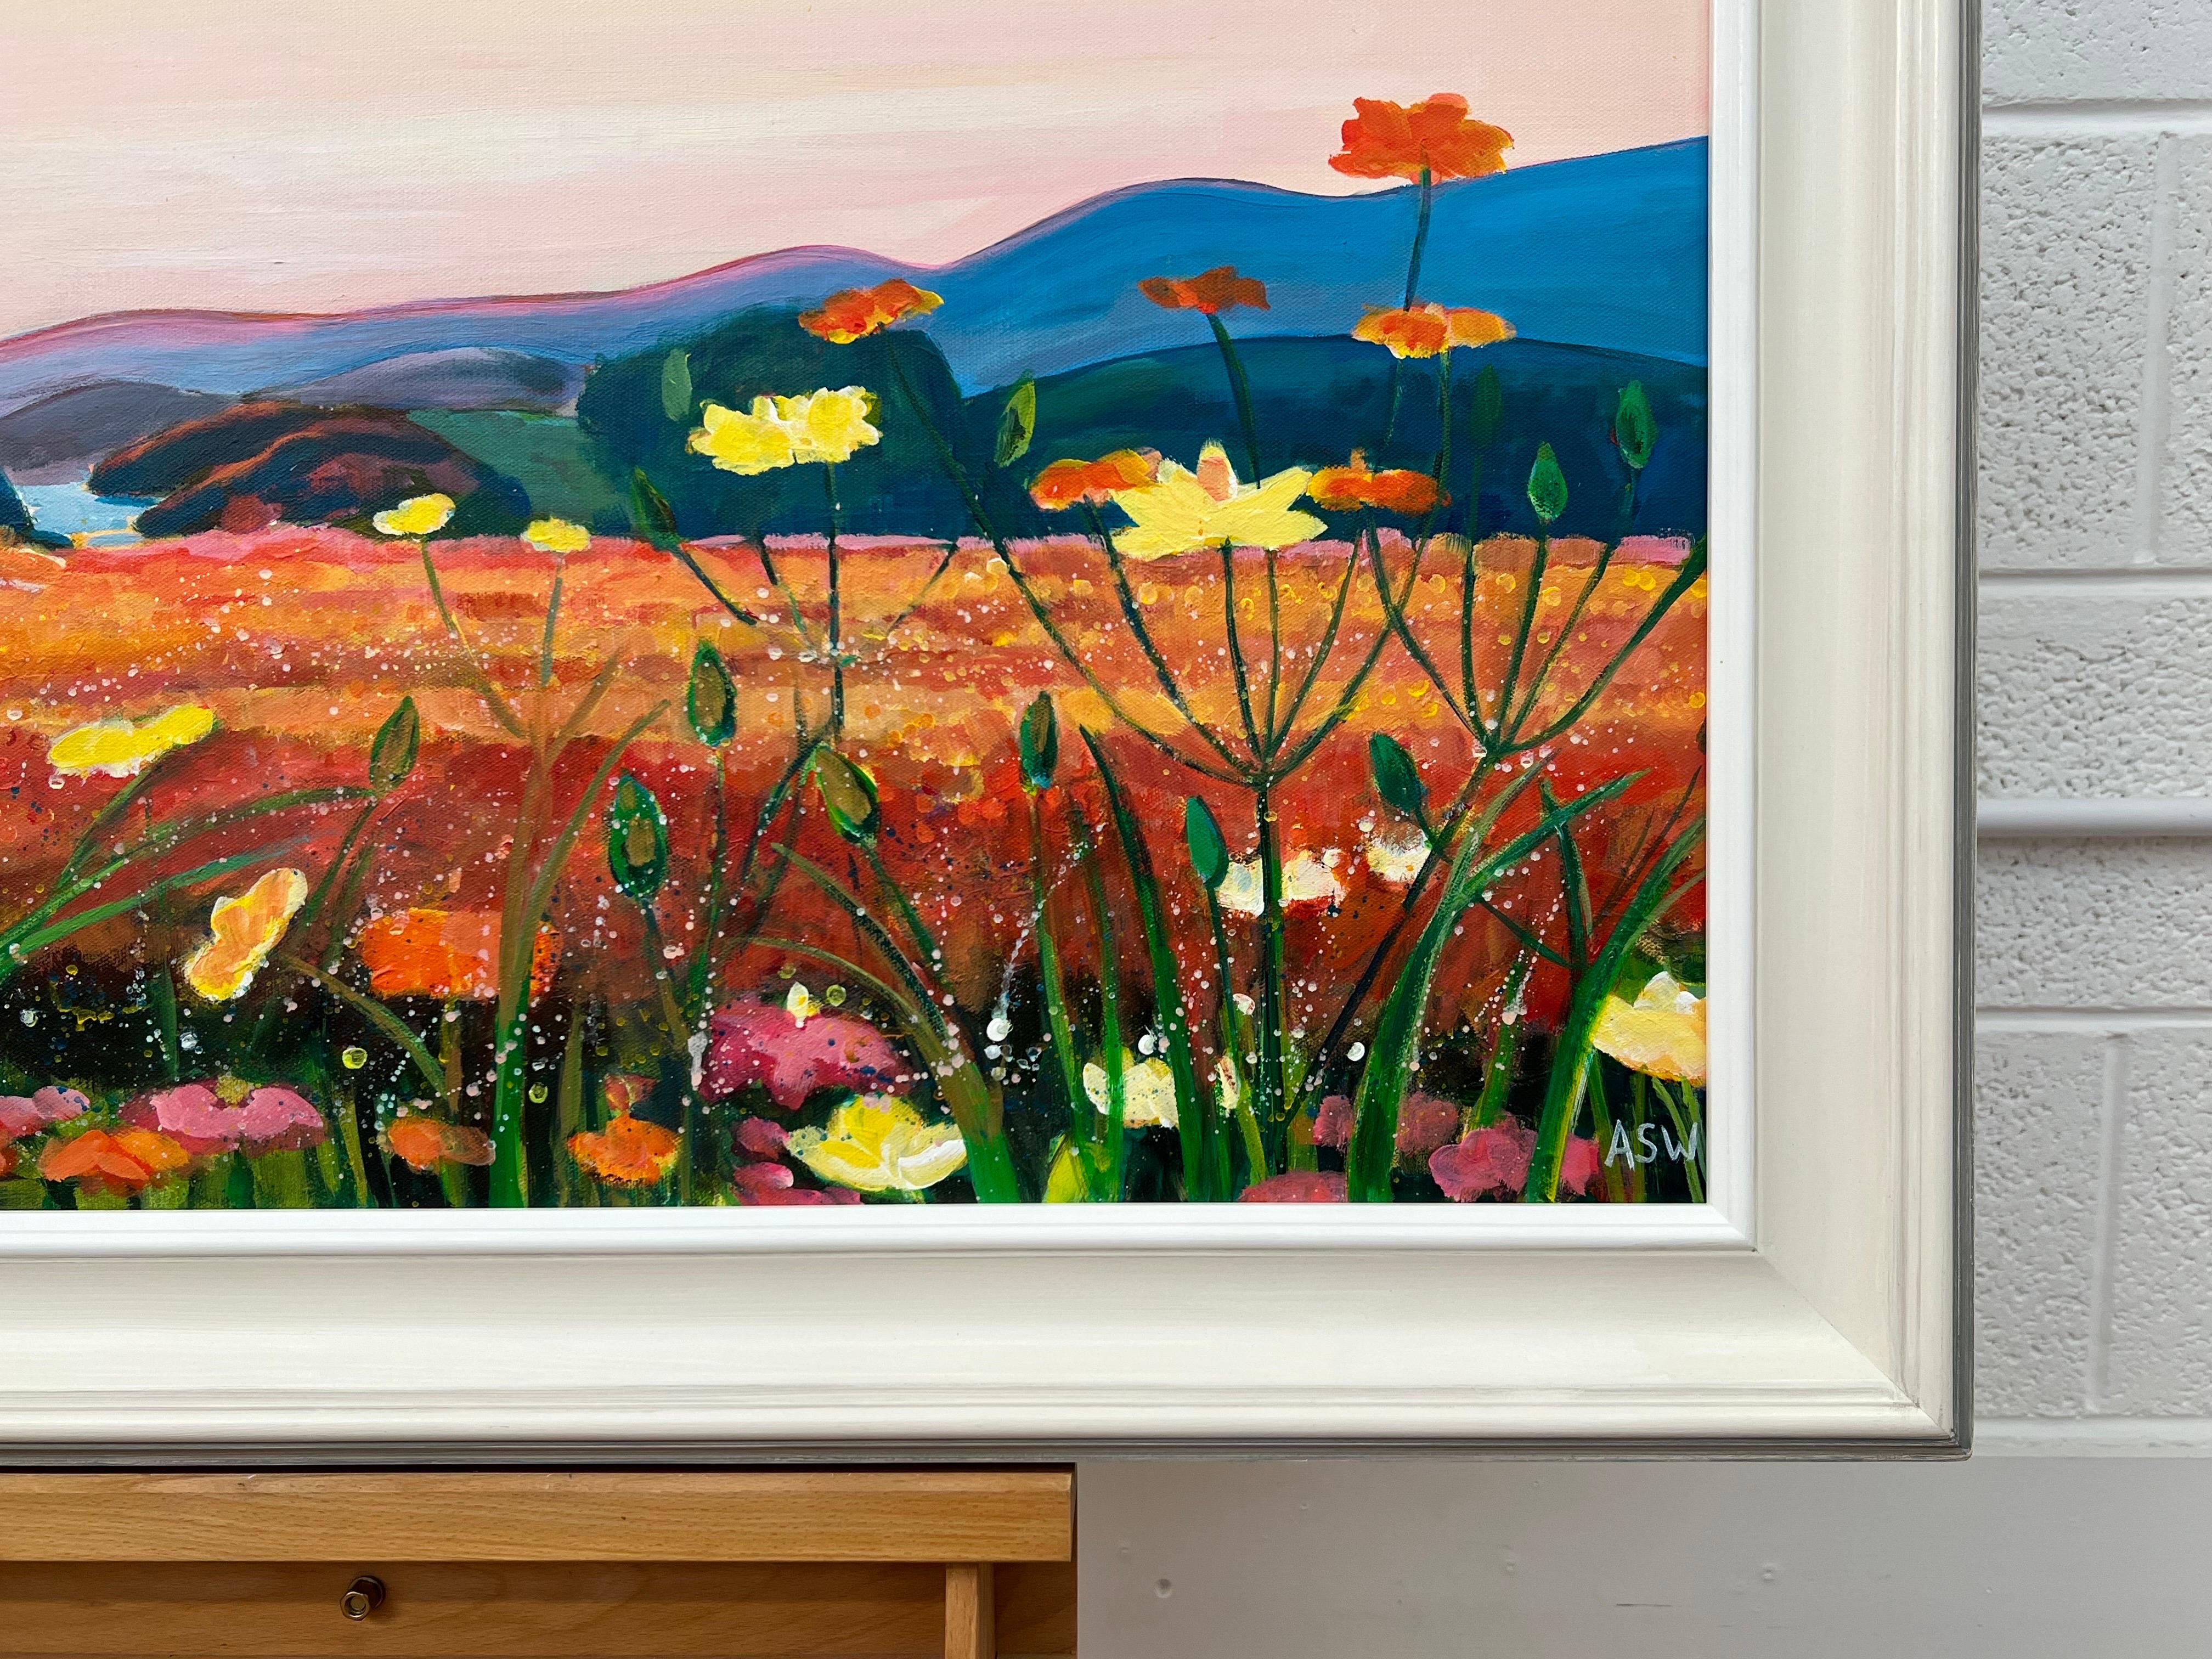 Warme spanische Sonnenuntergangslandschaft mit wilden Blumen von der zeitgenössischen britischen Künstlerin Angela Wakefield. 

Kunst misst 36 x 24 Zoll
Rahmen misst 42 x 30 Zoll 

Präsentiert in hochwertigem, handgefertigtem, cremefarbenem